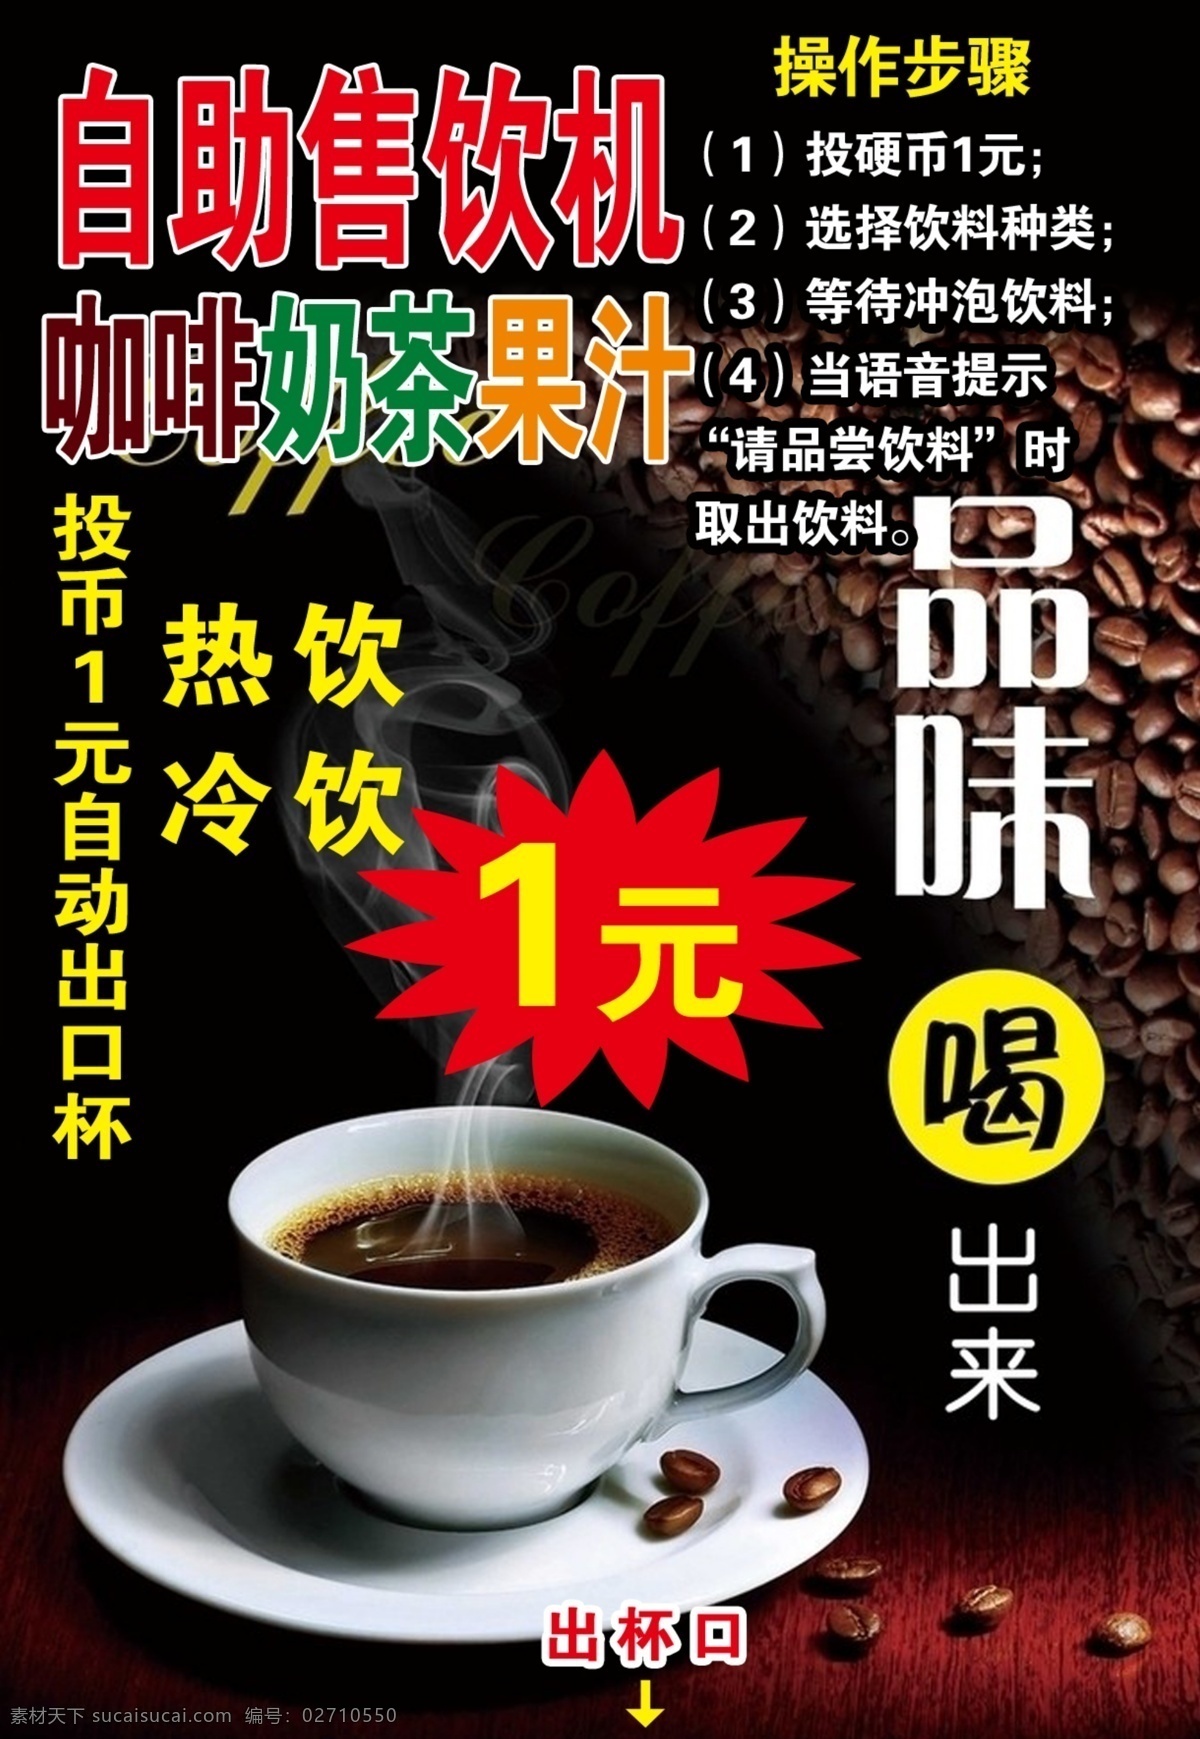 咖啡海报 咖啡 投币咖啡广告 咖啡豆 咖啡广告 品味咖啡